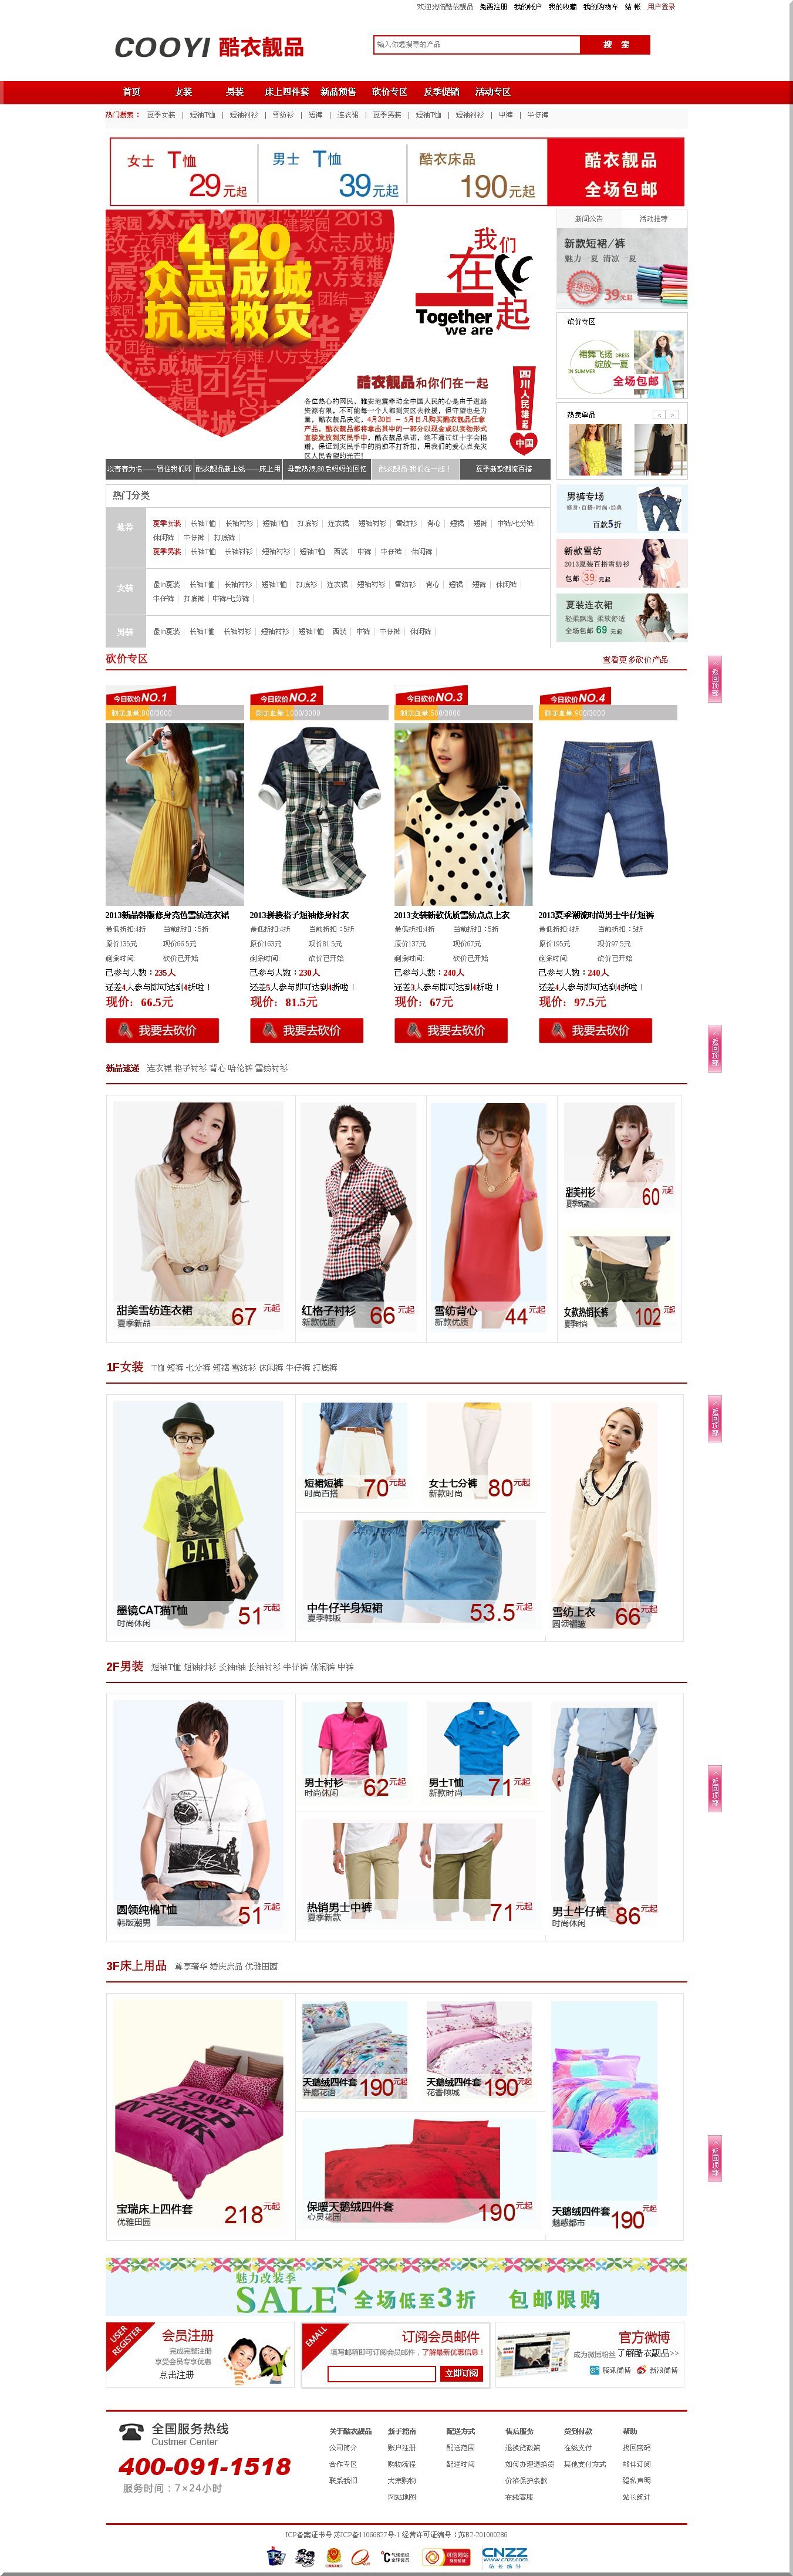 酷衣靓品cooyi,互联网日韩品牌女装购物商城,女装,男装,砍价购物,网上购物,7天无条件退换货